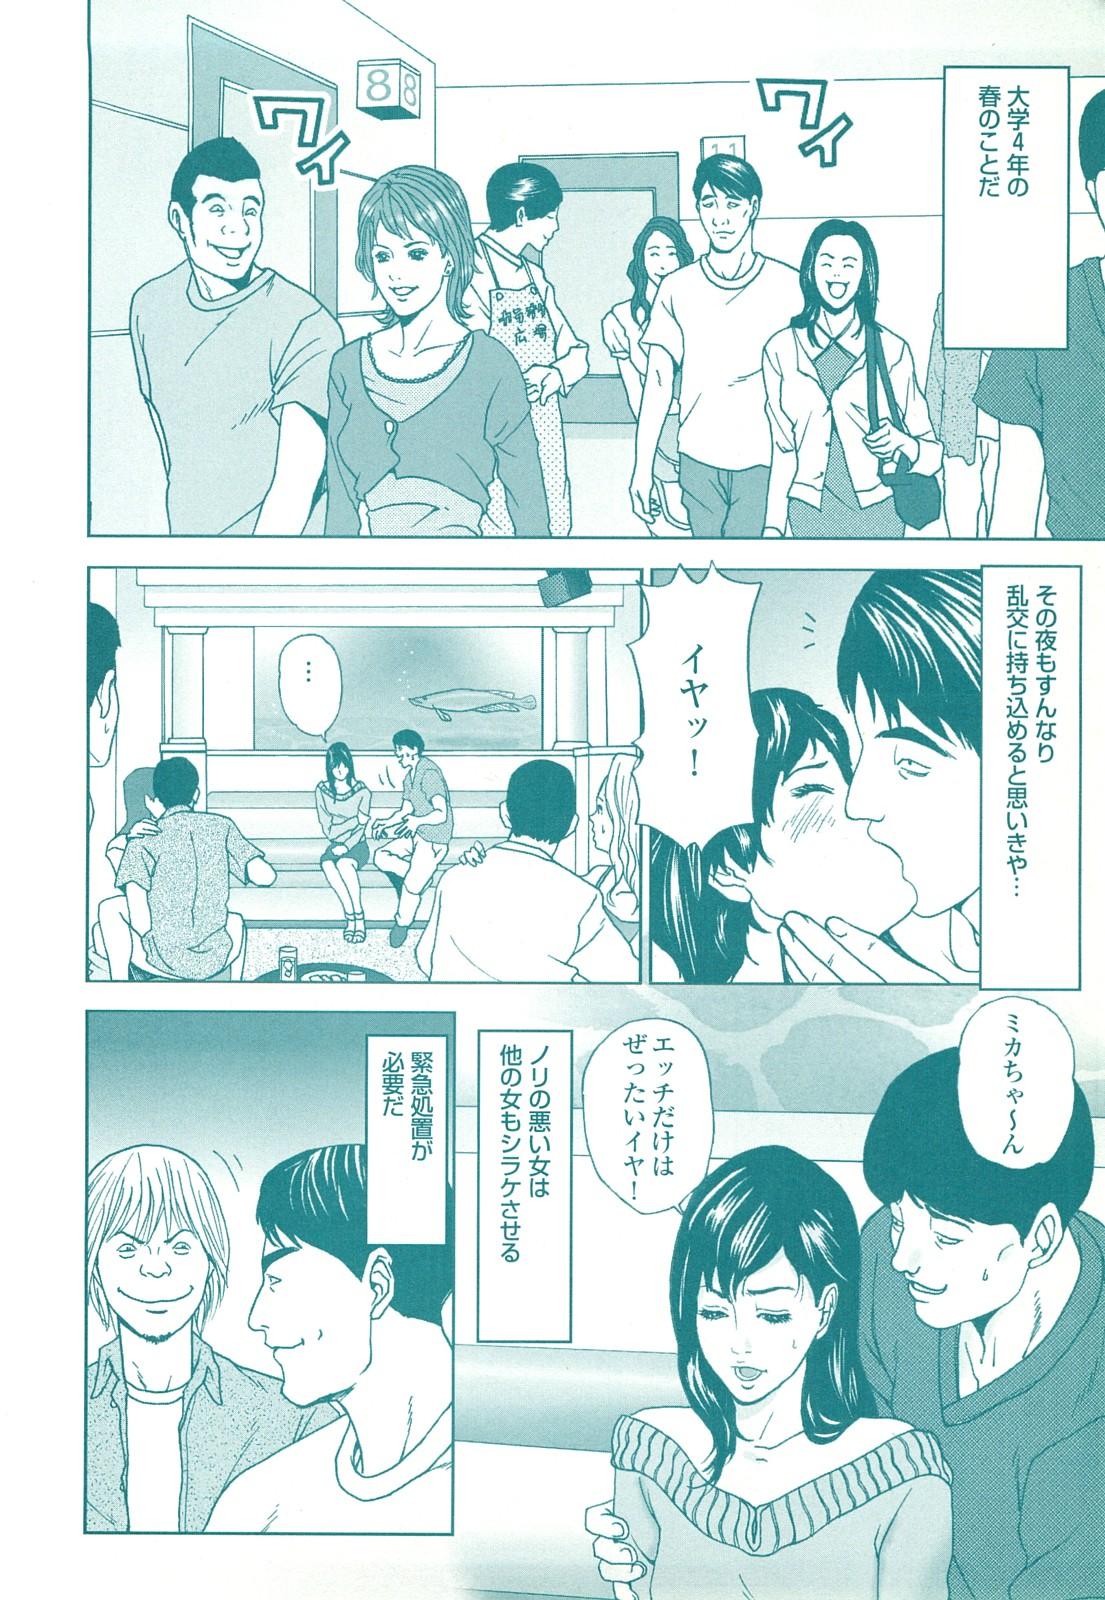 コミック裏モノJAPAN Vol.18 今井のりたつスペシャル号 153